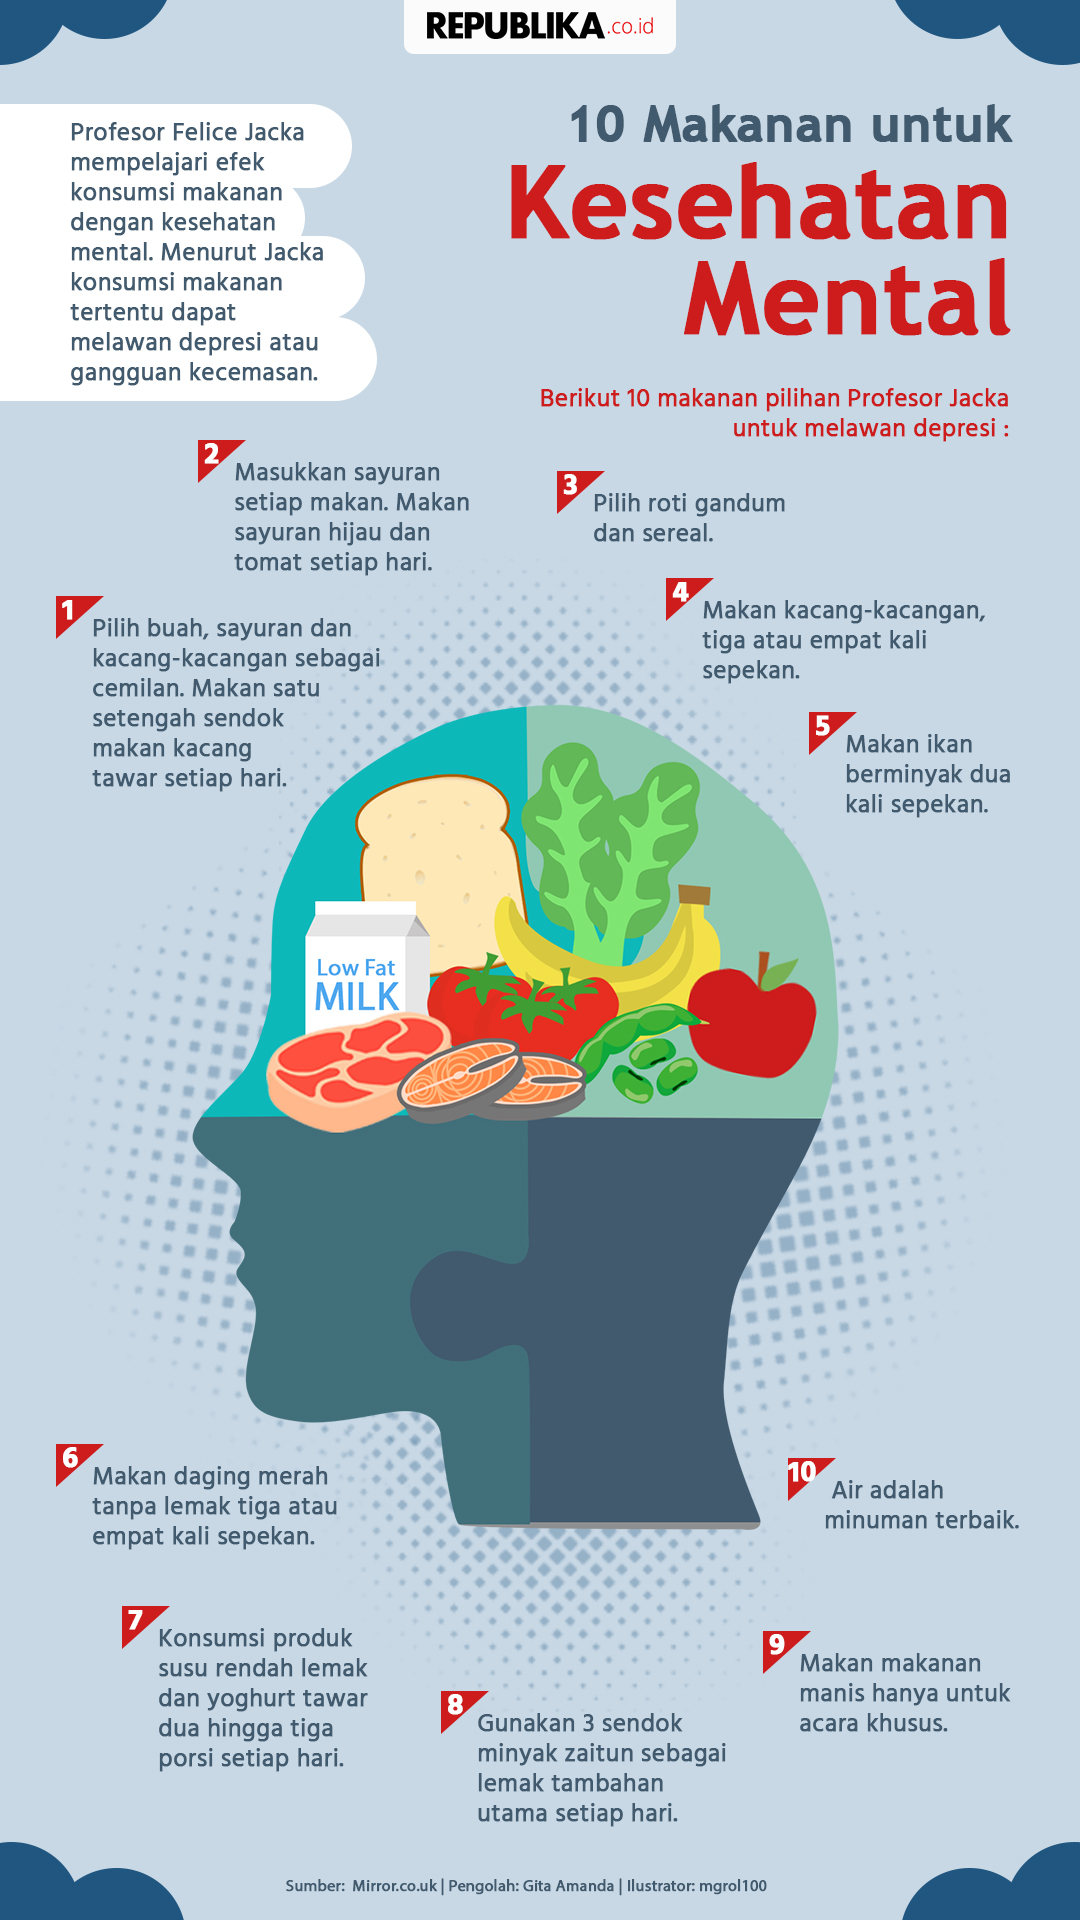 10 Makanan untuk Kesehatan Mental | Republika Online